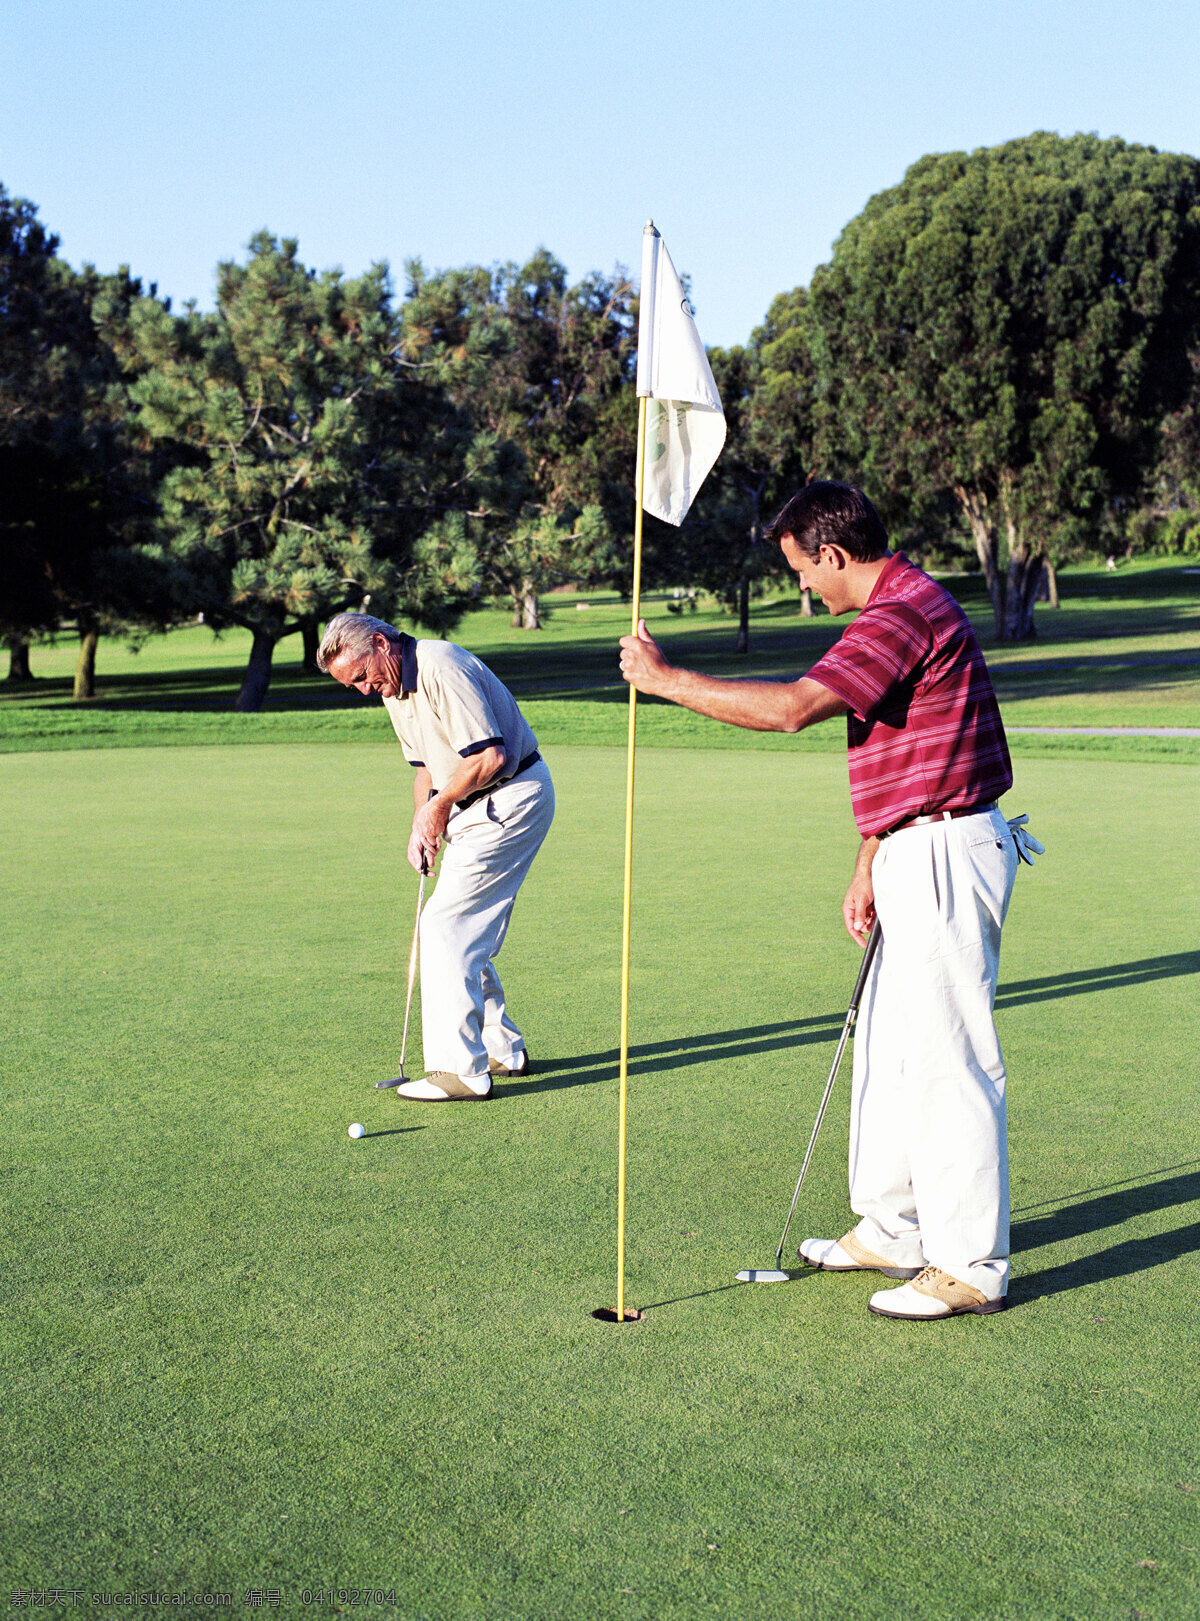 高尔夫球 两个 男人 打高尔夫球 高尔夫球杆 高尔夫球场 男性 外国男人 外国人物 体育运动 生活百科